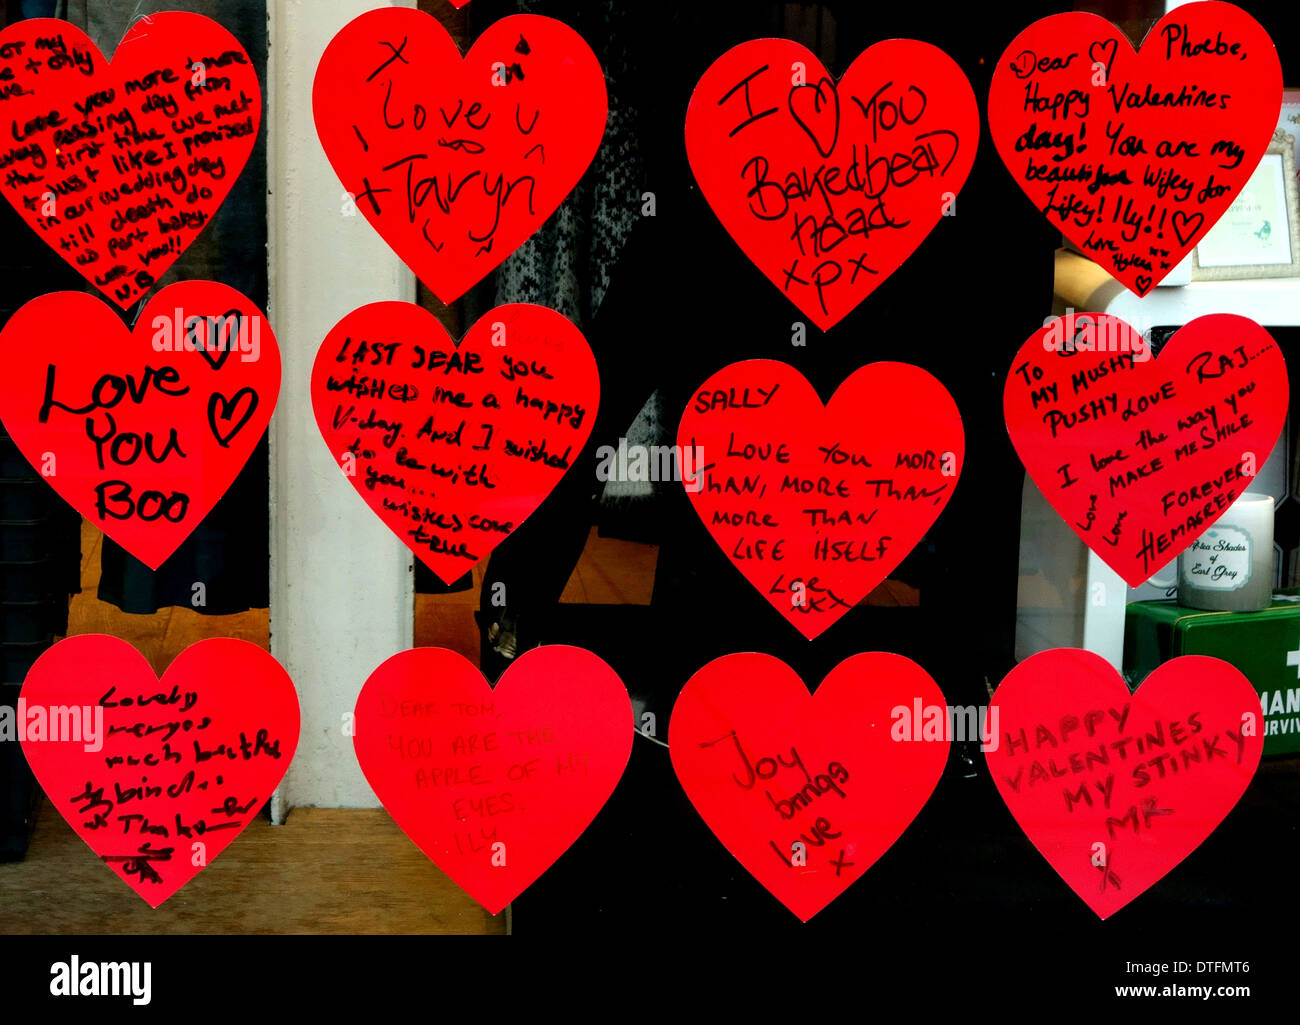 Il giorno di San Valentino i messaggi nella finestra del negozio display, Londra Foto Stock